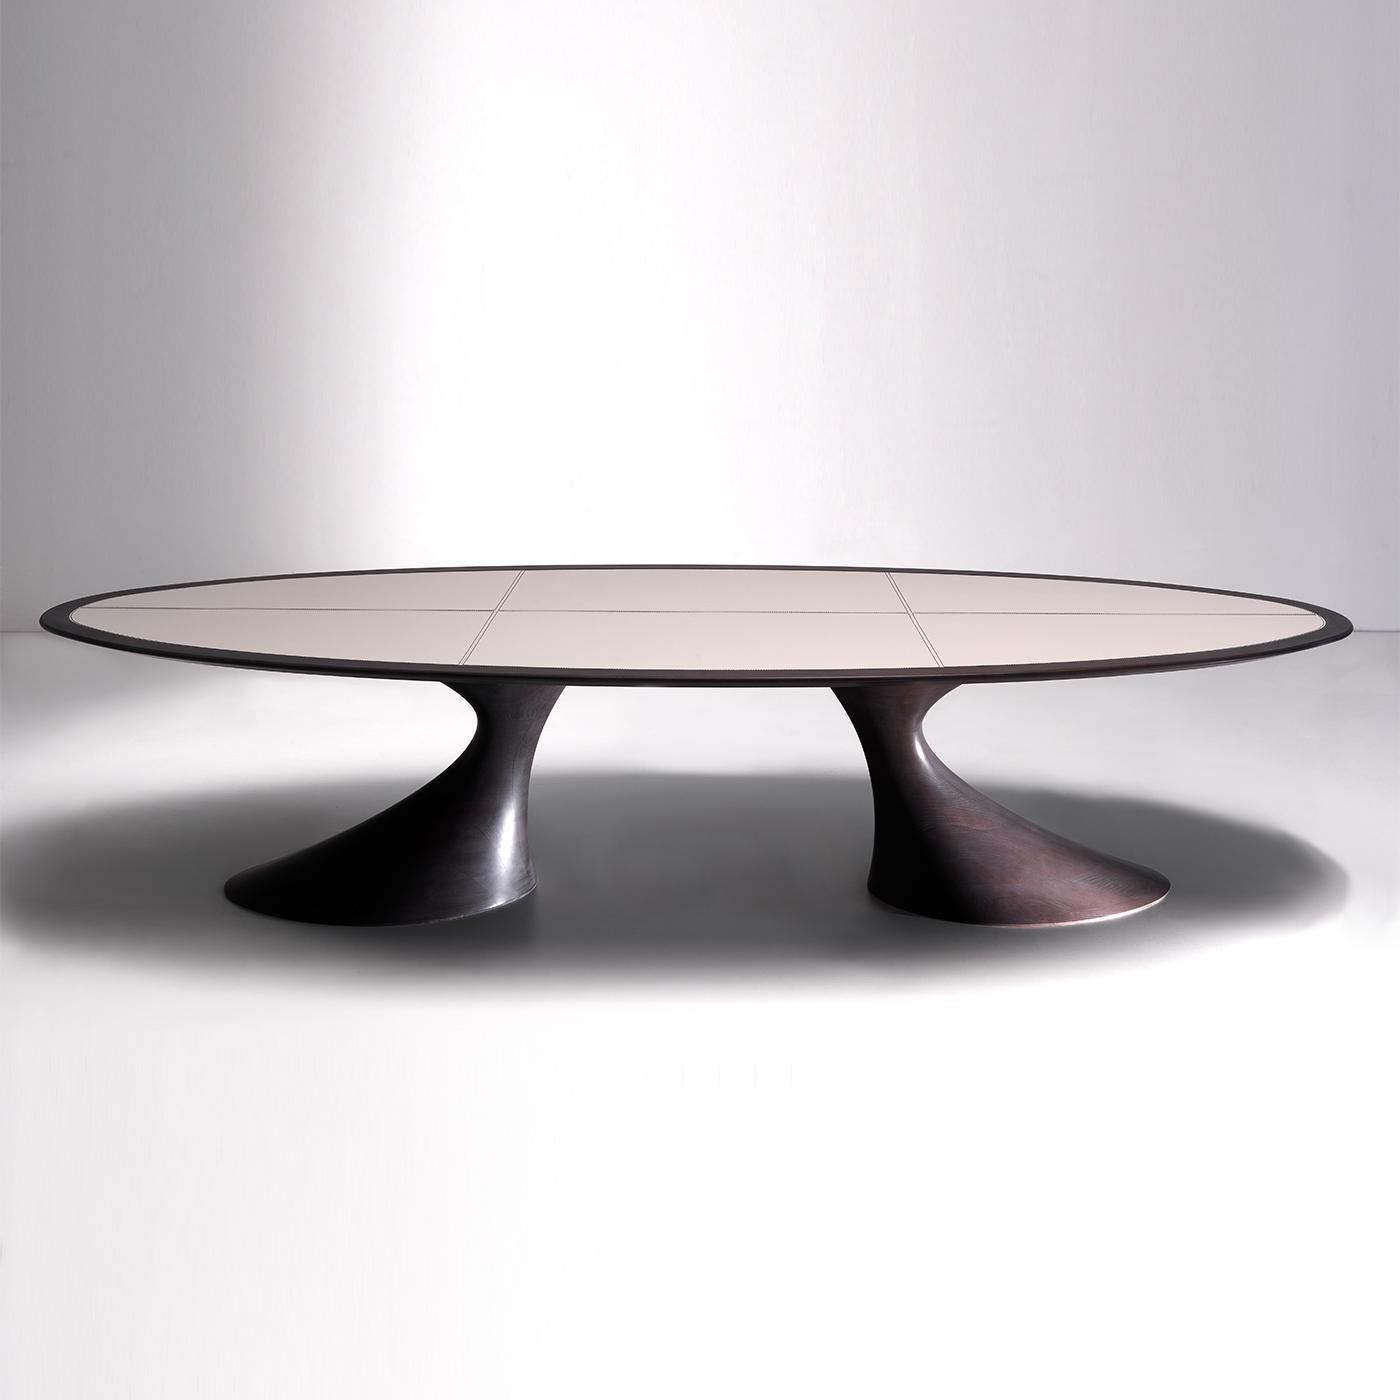 Cette table à manger sculpturale est un meuble splendide autour duquel se réunir. Son profil intriguant est marqué par des courbes douces et dramatiques dans un design qui prendra la vedette dans tout décor contemporain. Le design sinueux et